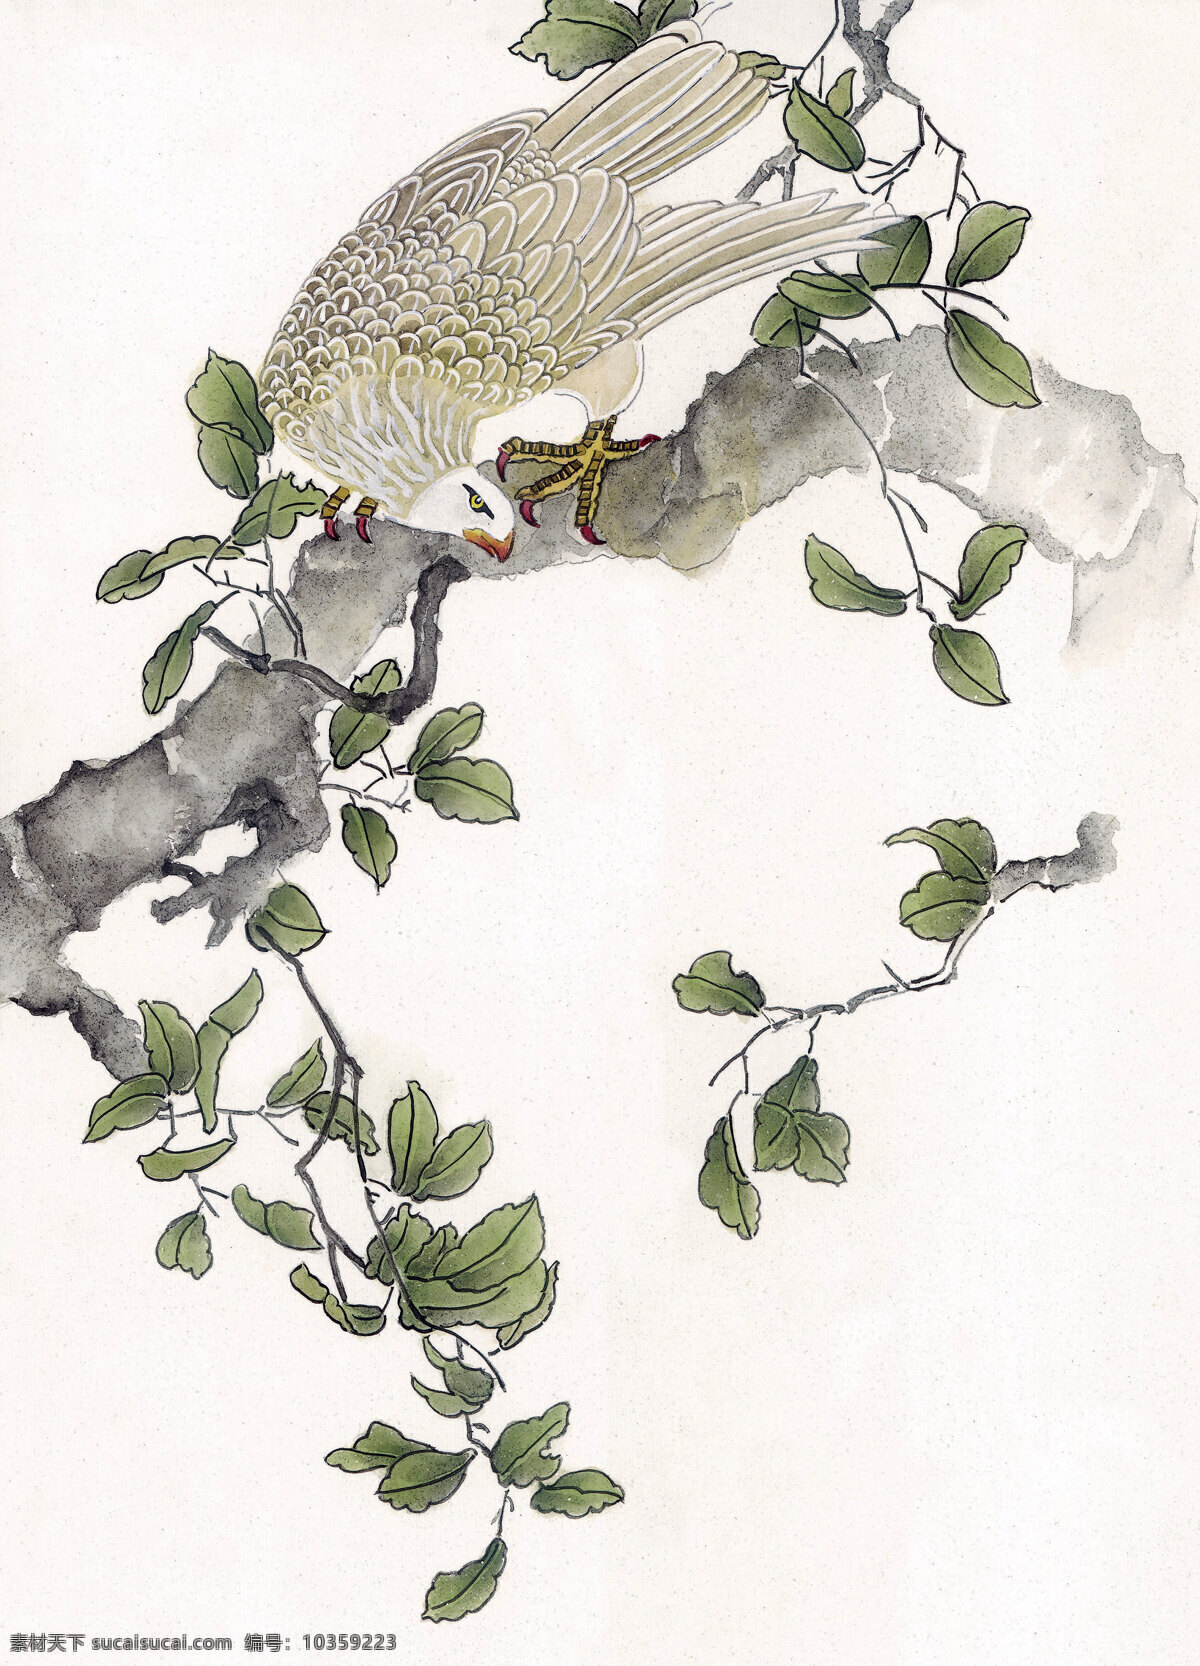 鹰 工笔花鸟 国画0235 国画 设计素材 花鸟画篇 中国画篇 书画美术 白色